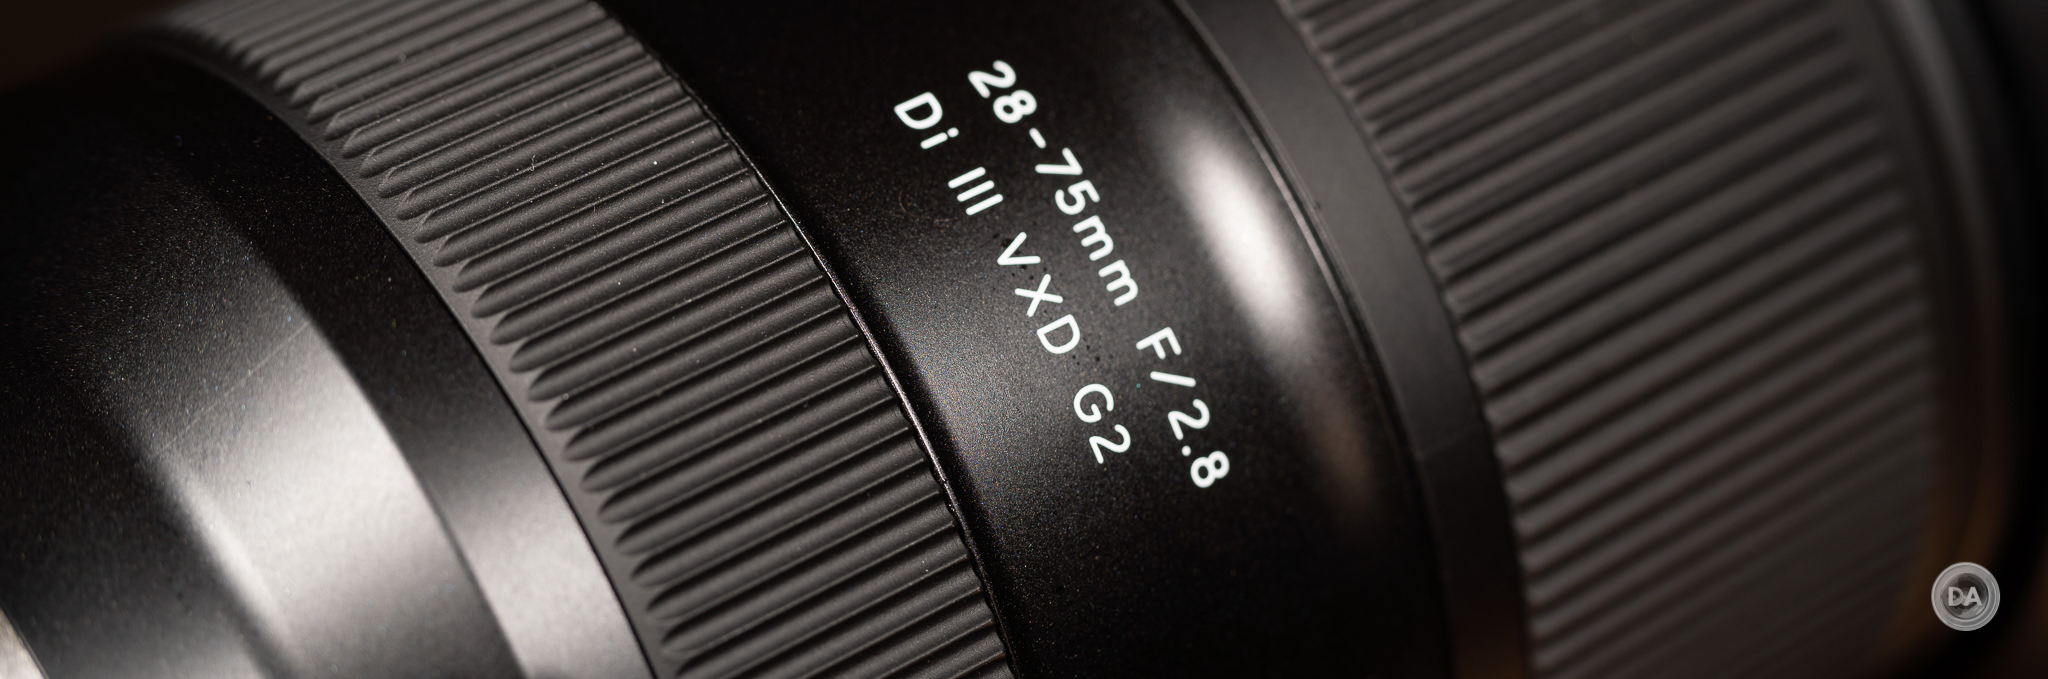 カメラ その他 Tamron 28-75mm F2.8 Di III VXD G2 (A063) Review - DustinAbbott.net